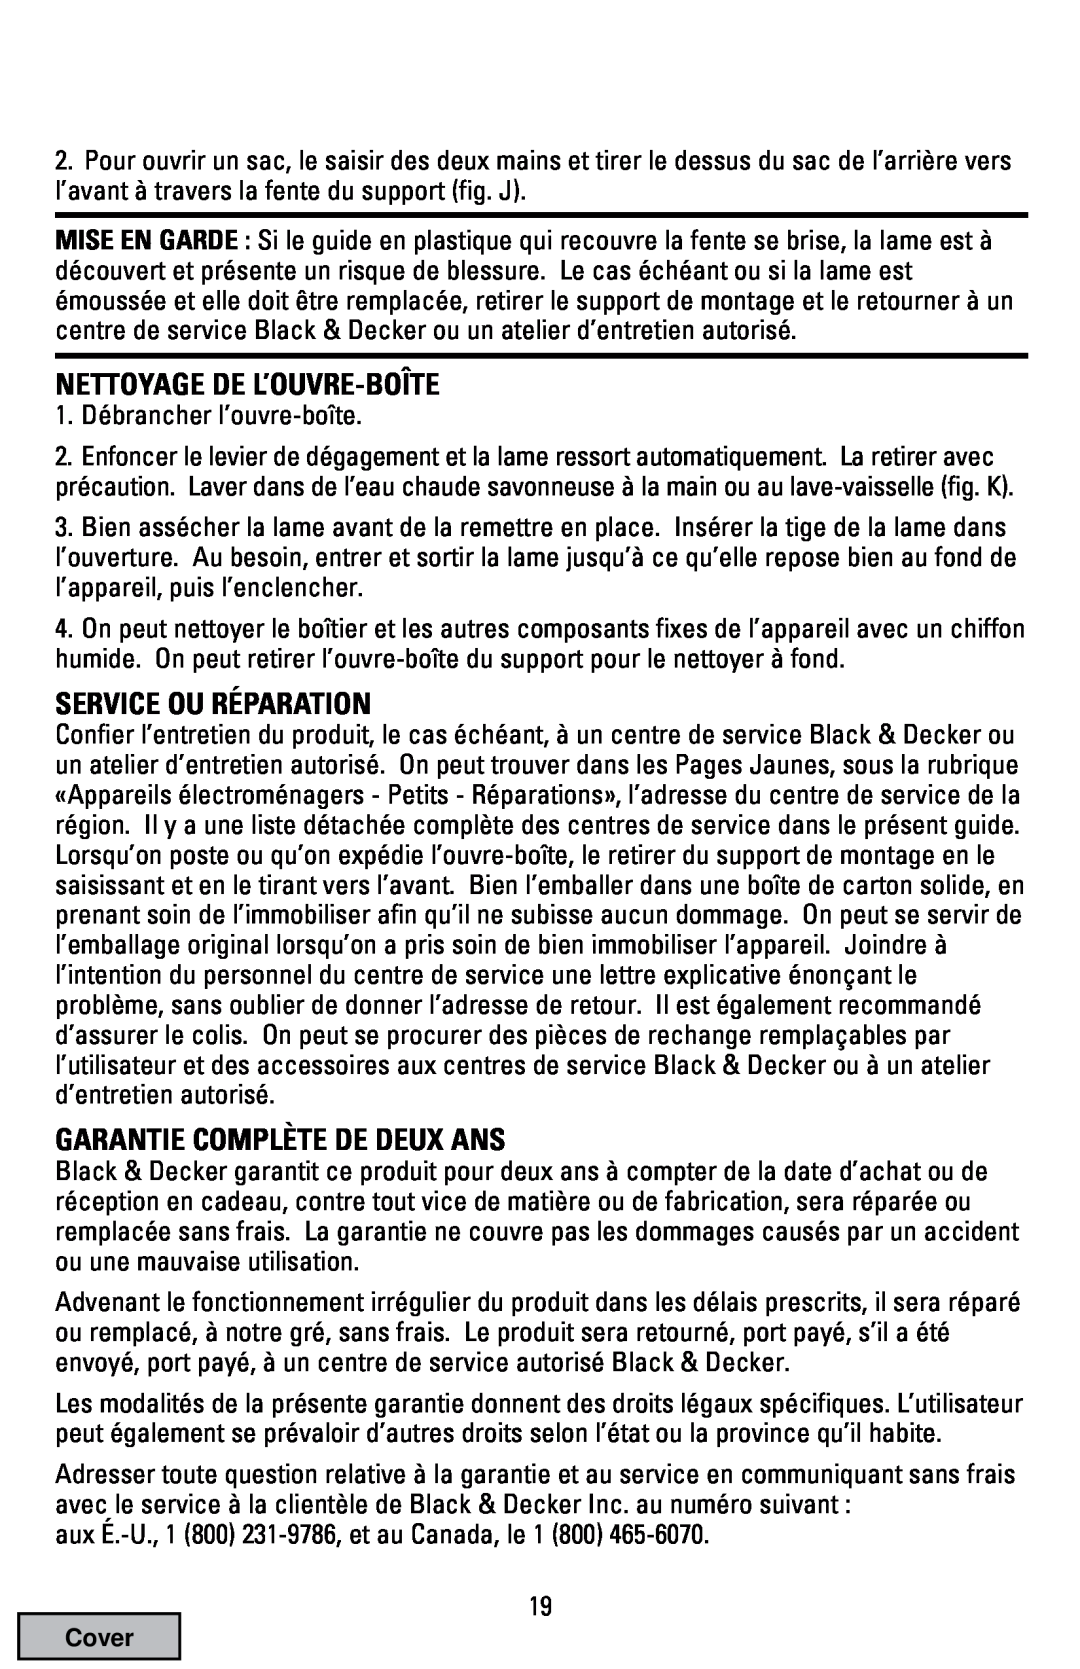 Black & Decker EC70 manual Nettoyage De L’Ouvre-Boîte, Service Ou Réparation, Garantie Complète De Deux Ans 